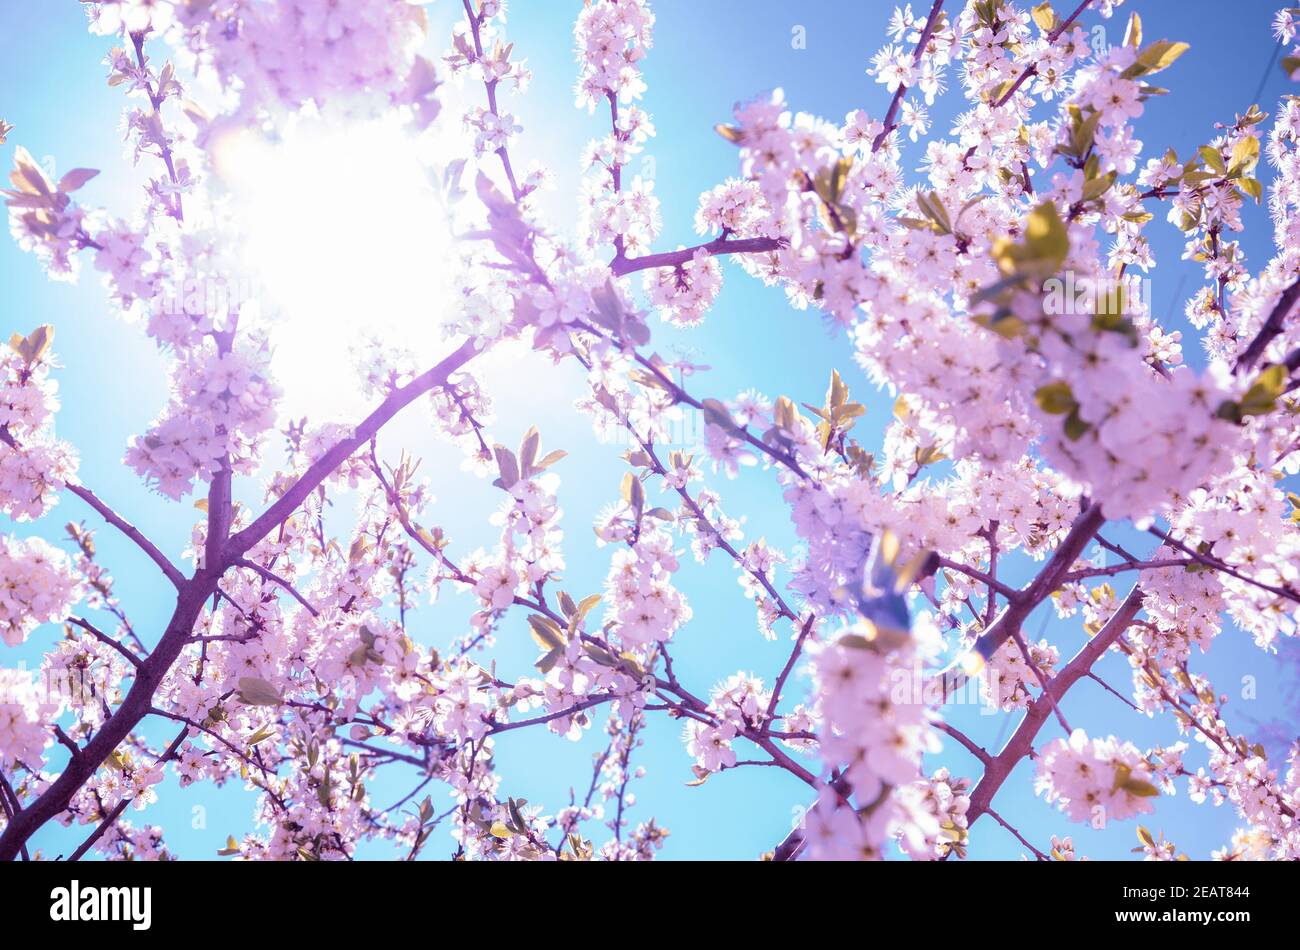 Frühling sonnige Landschaft mit Kirschbaum im Garten.Zweige blühender Kirschblüten auf einem Hintergrund von gesättigten blauen Himmel.Sonnige Frühlingsszene. Stockfoto